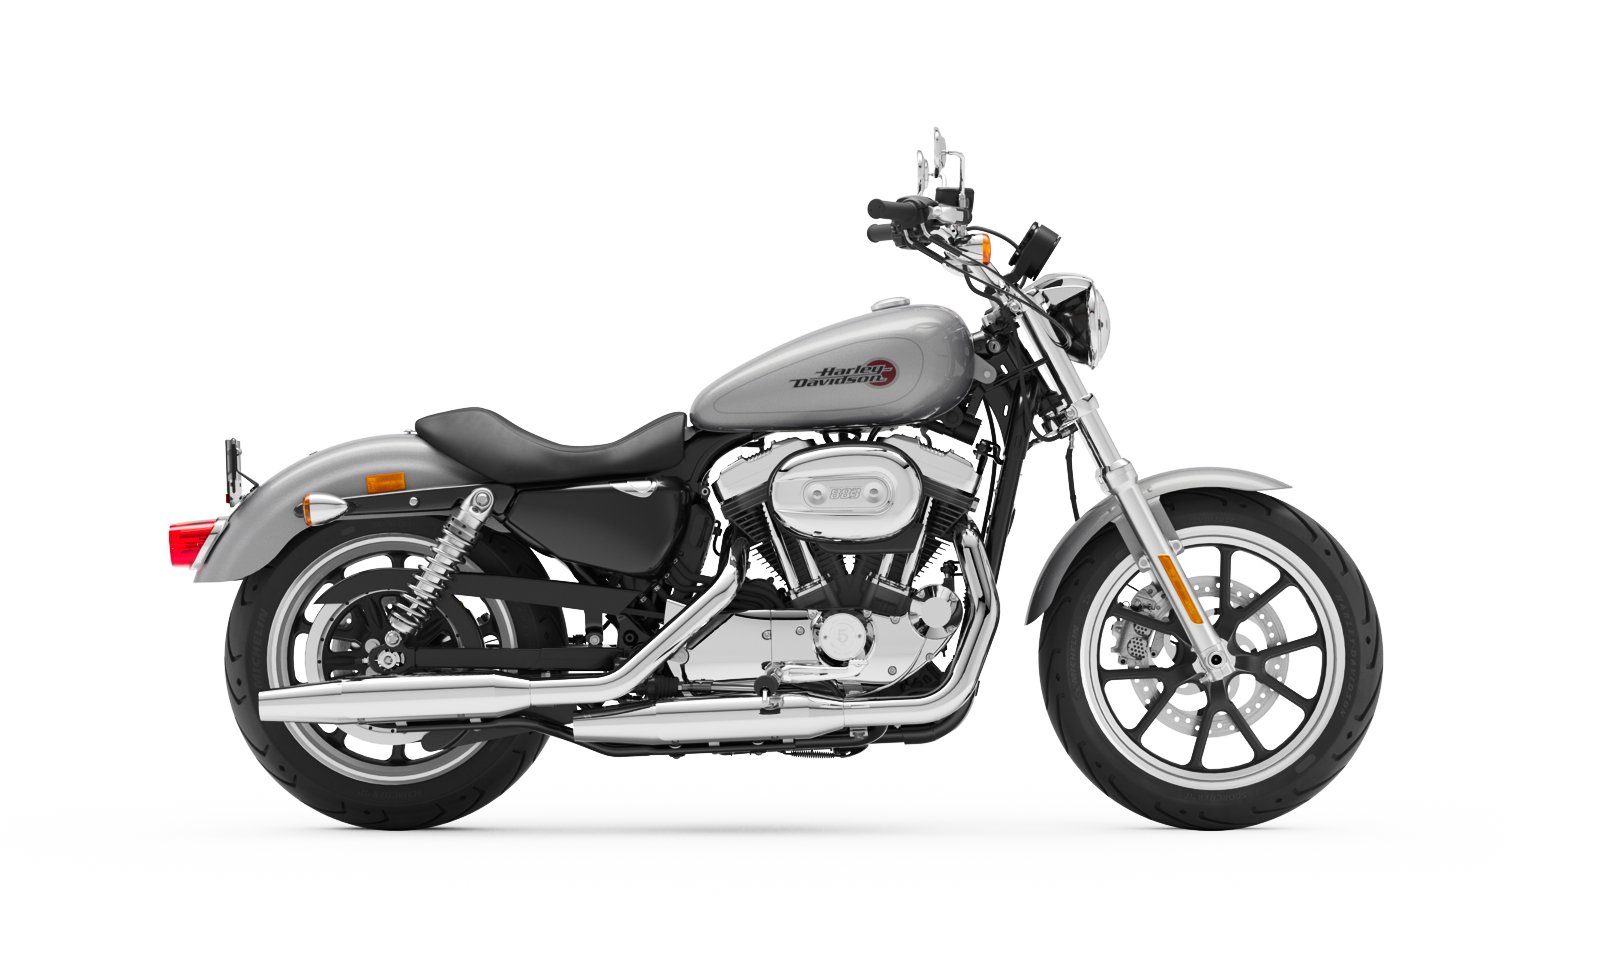 2020 Harley Davidson Superlow Motorcycle Harley Davidson Osterreich